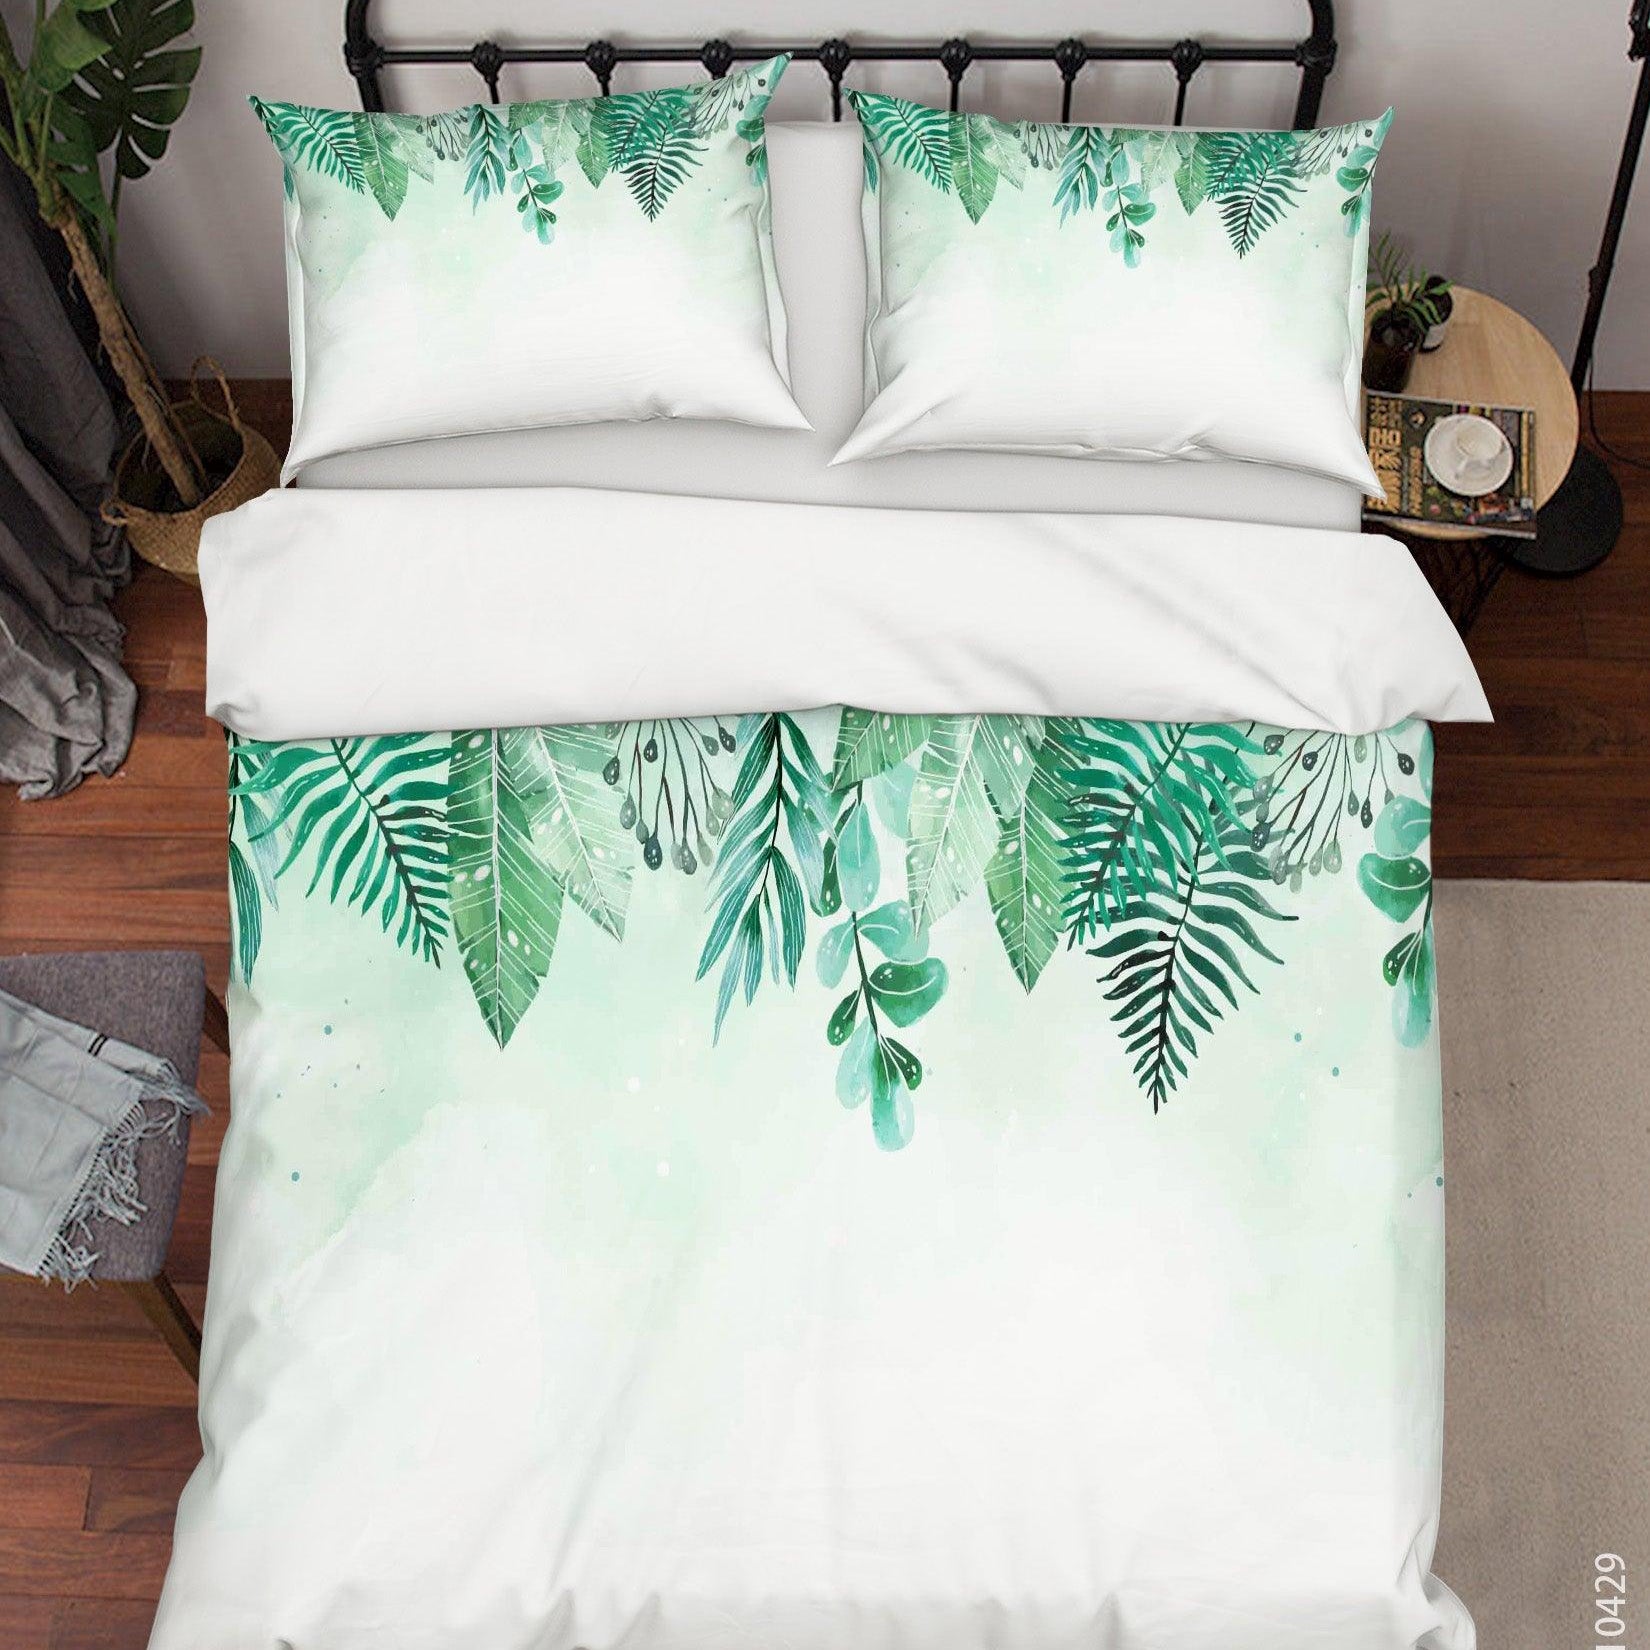 3D Watercolor Green Leaf Quilt Cover Set Bedding Set Duvet Cover Pillowcases 238- Jess Art Decoration